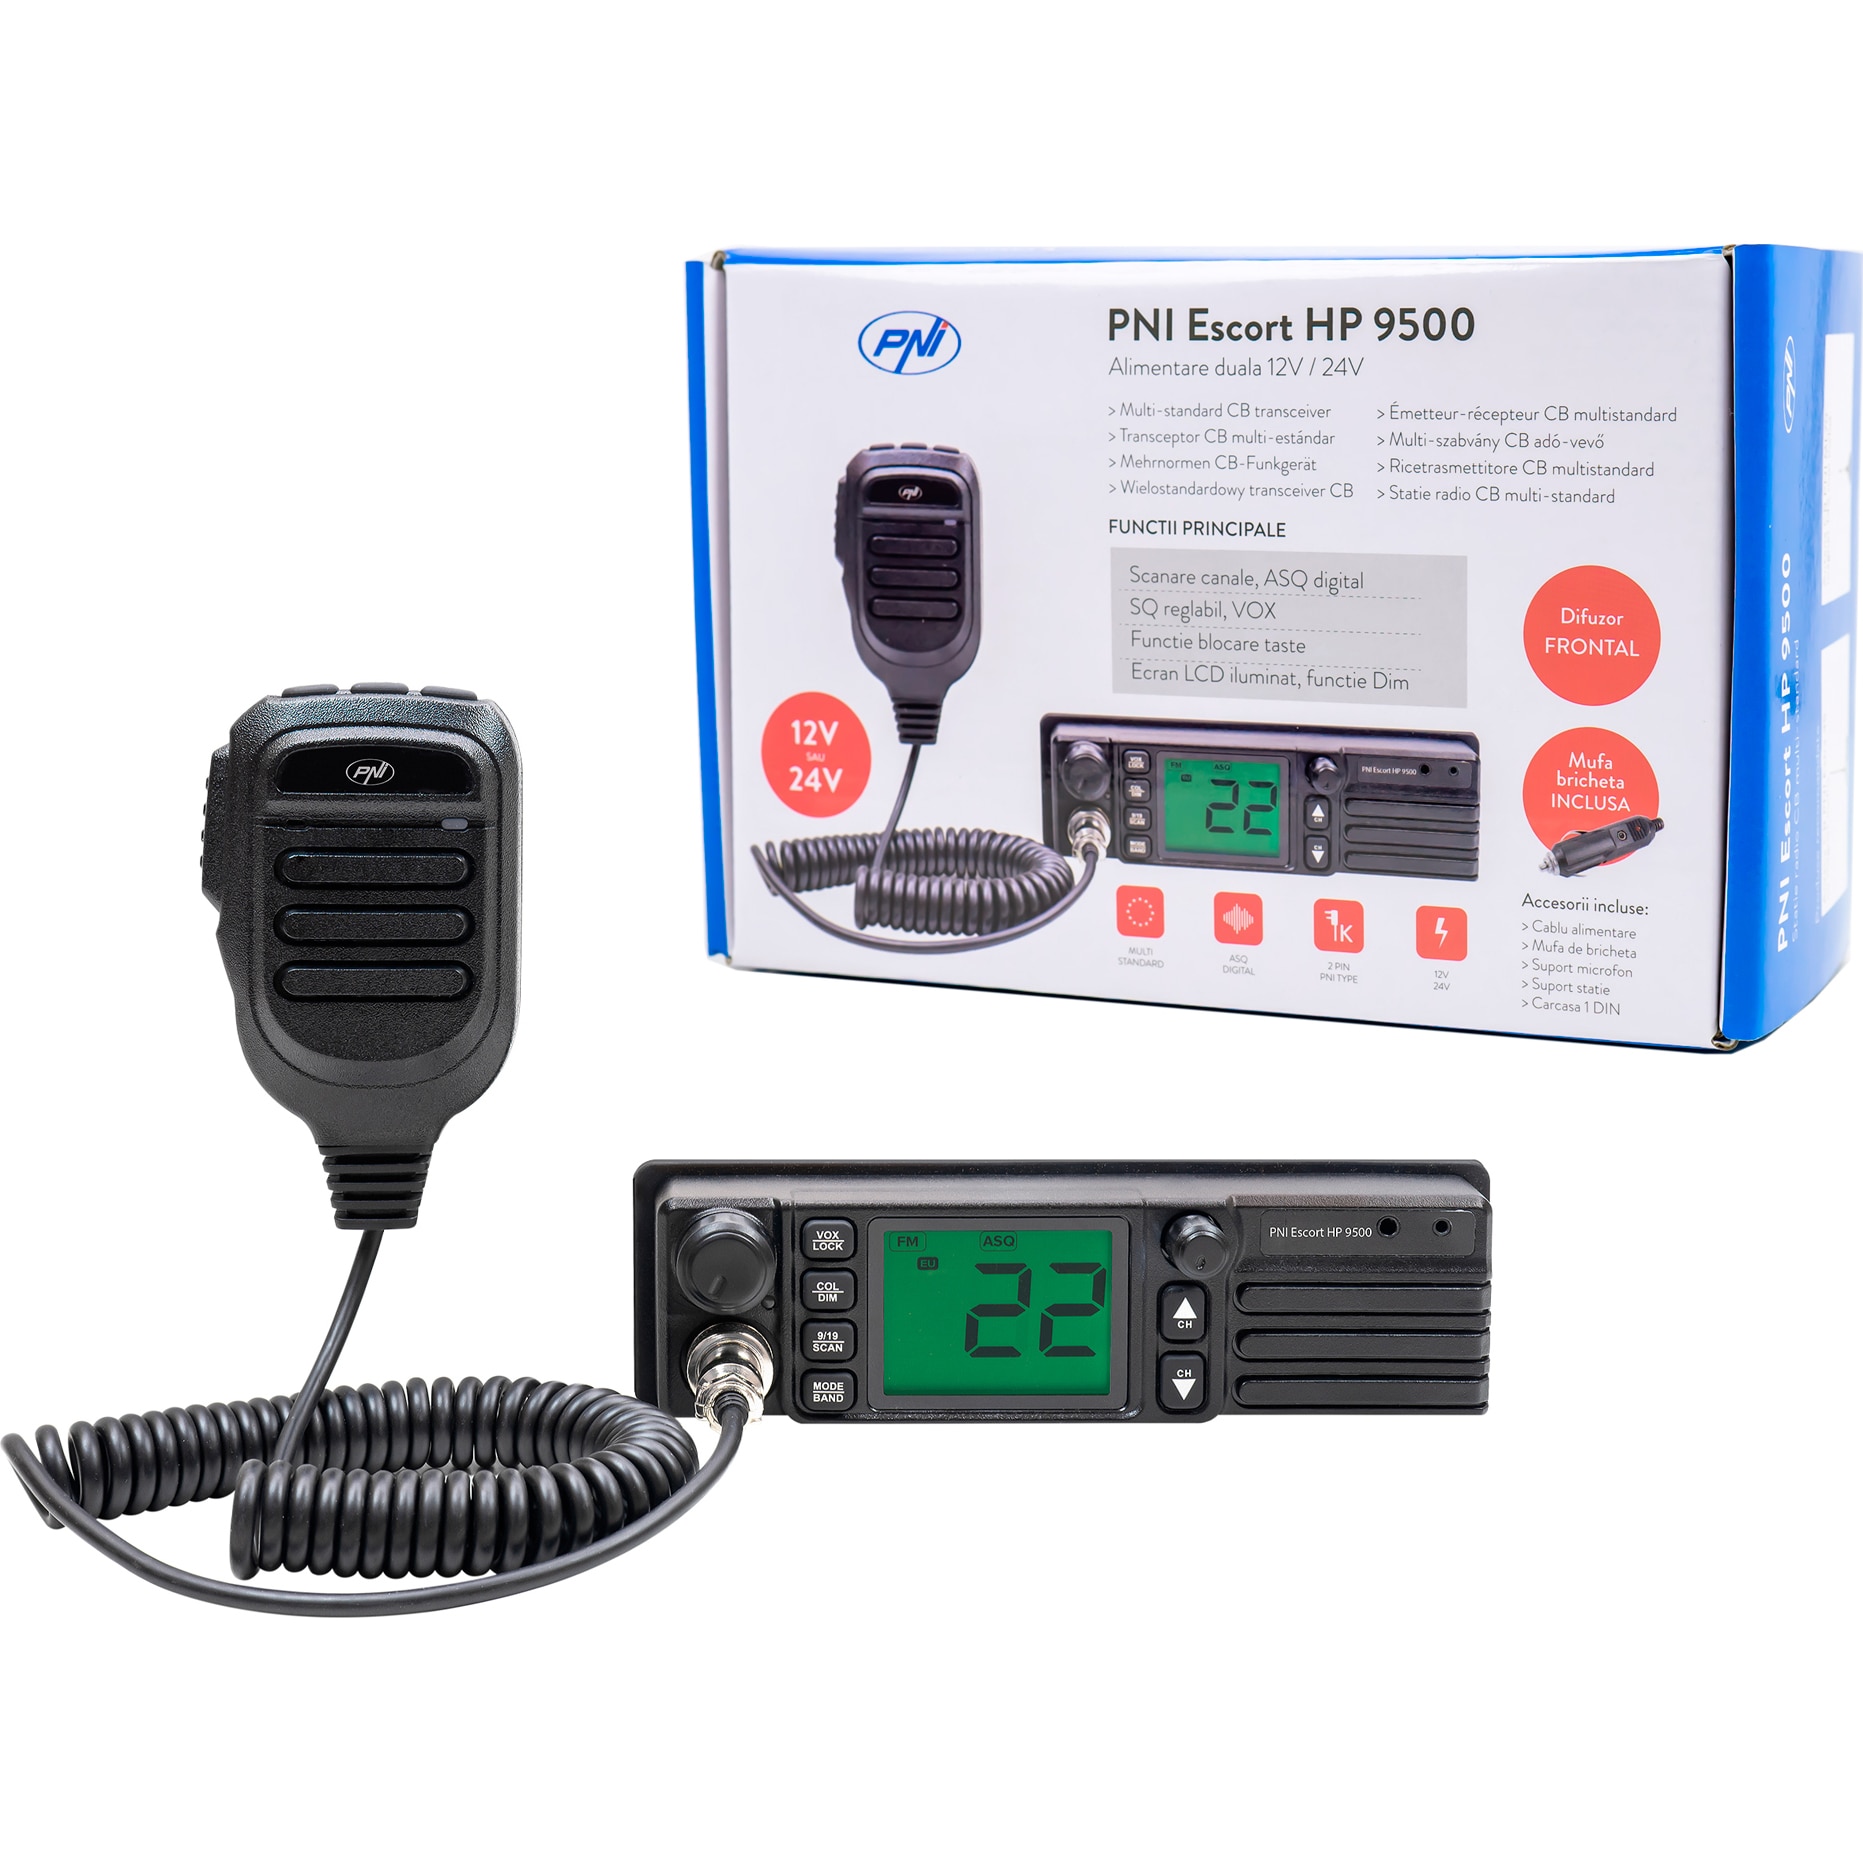 PNI Escort HP 9500 CB multistandard rádióállomás, ASQ, VOX, Scan, 4W, AM-FM,  12V 24V tápegység, szivargyújtó csatlakozóval